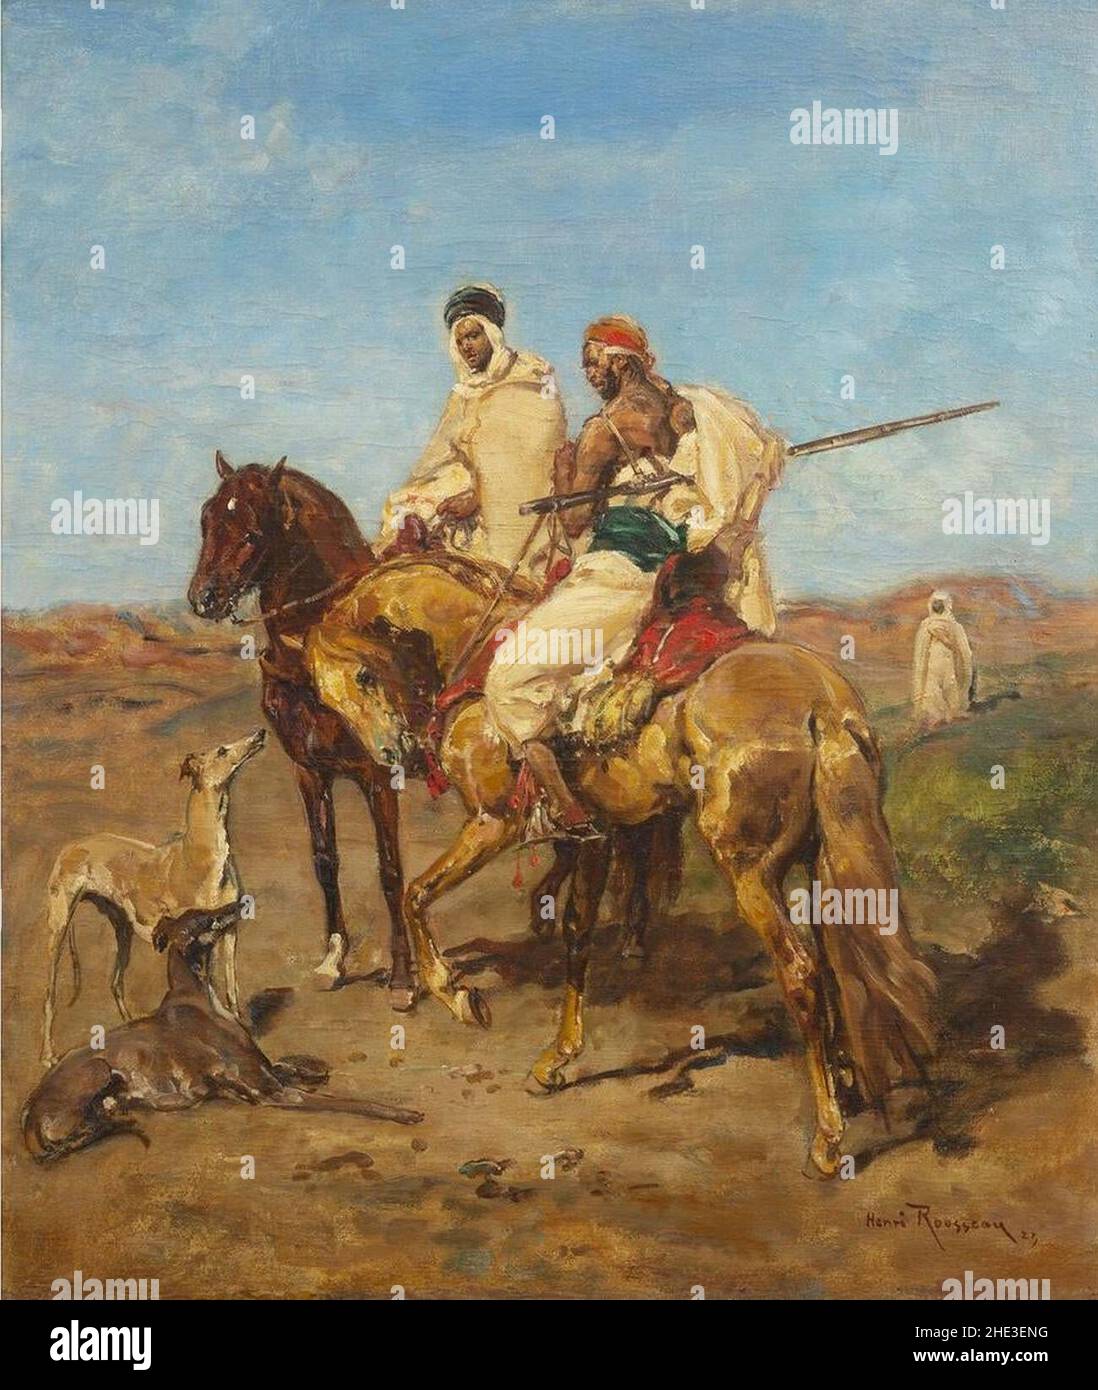 Arab Horsemen by Henri Émilien Rousseau, 1923. Stock Photo